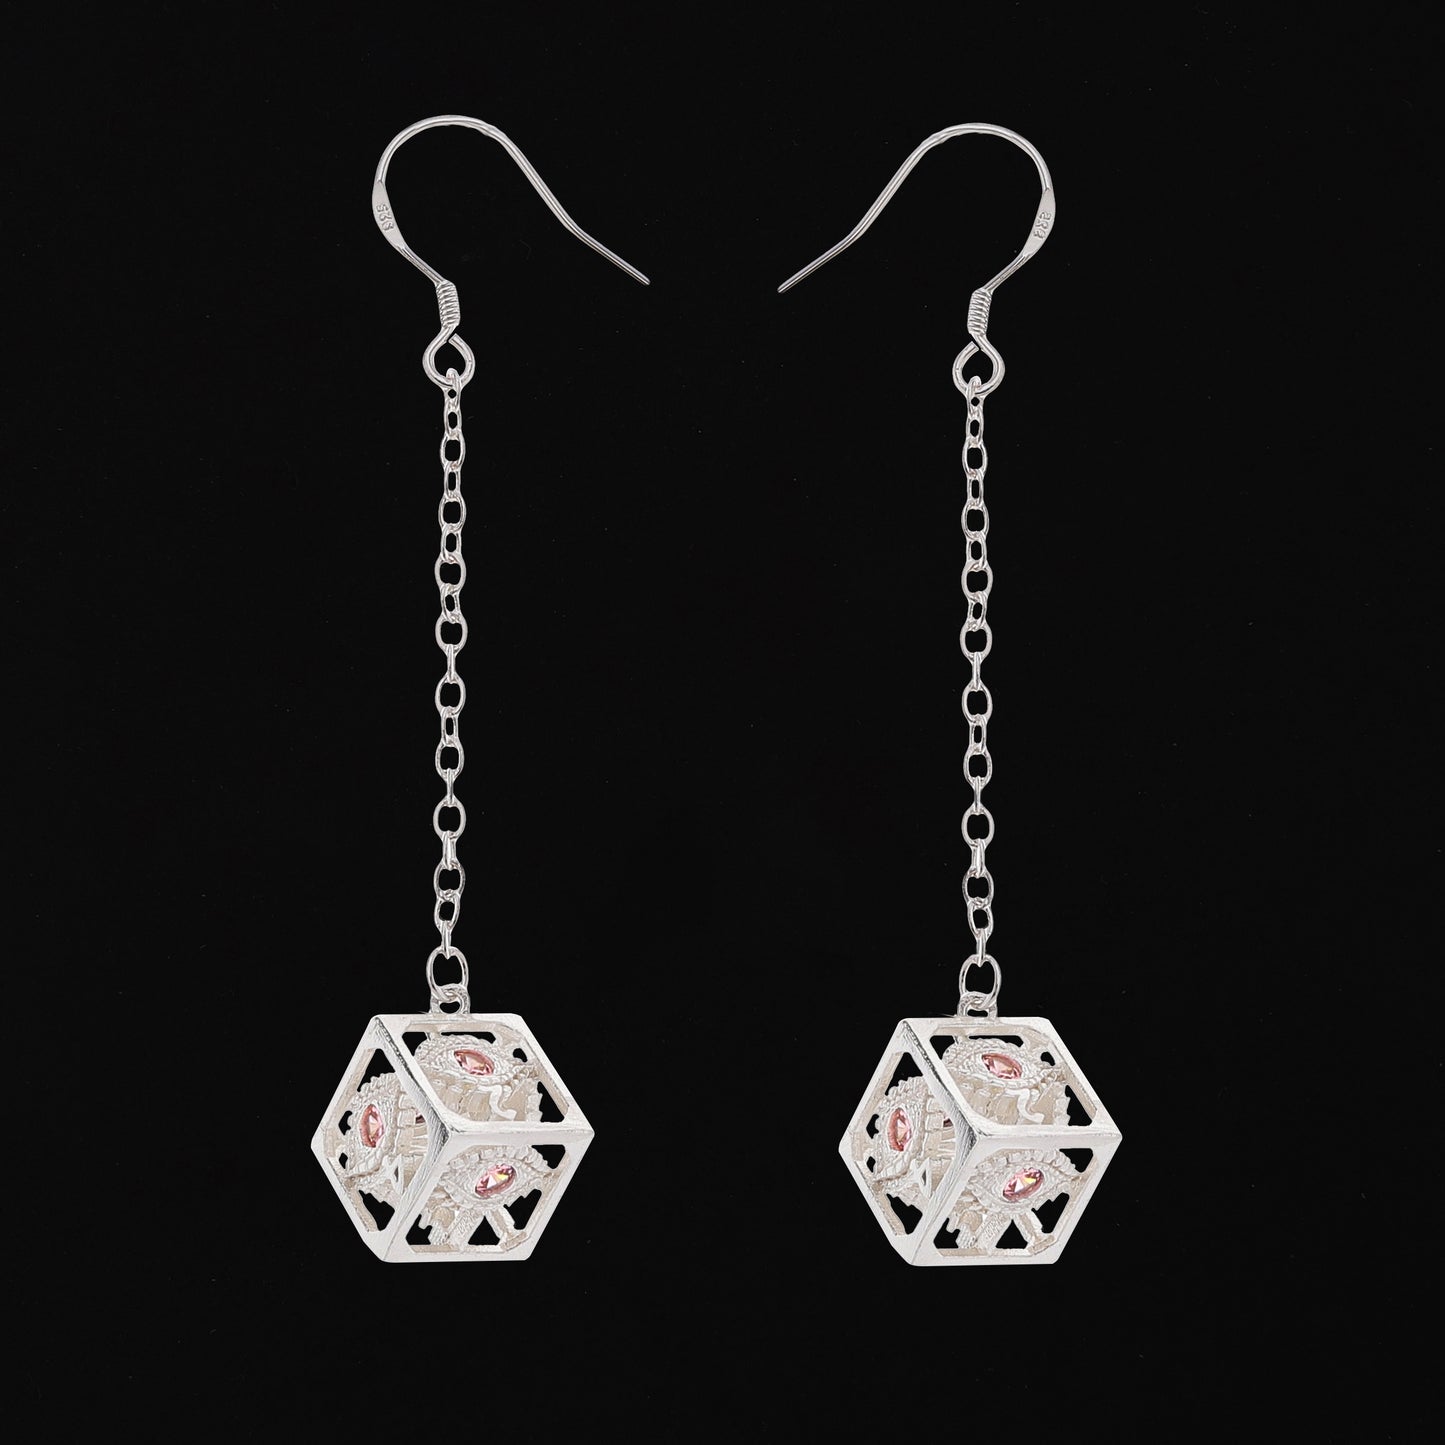 Dragon's eye D6 earrings-Silver w/Pink gems